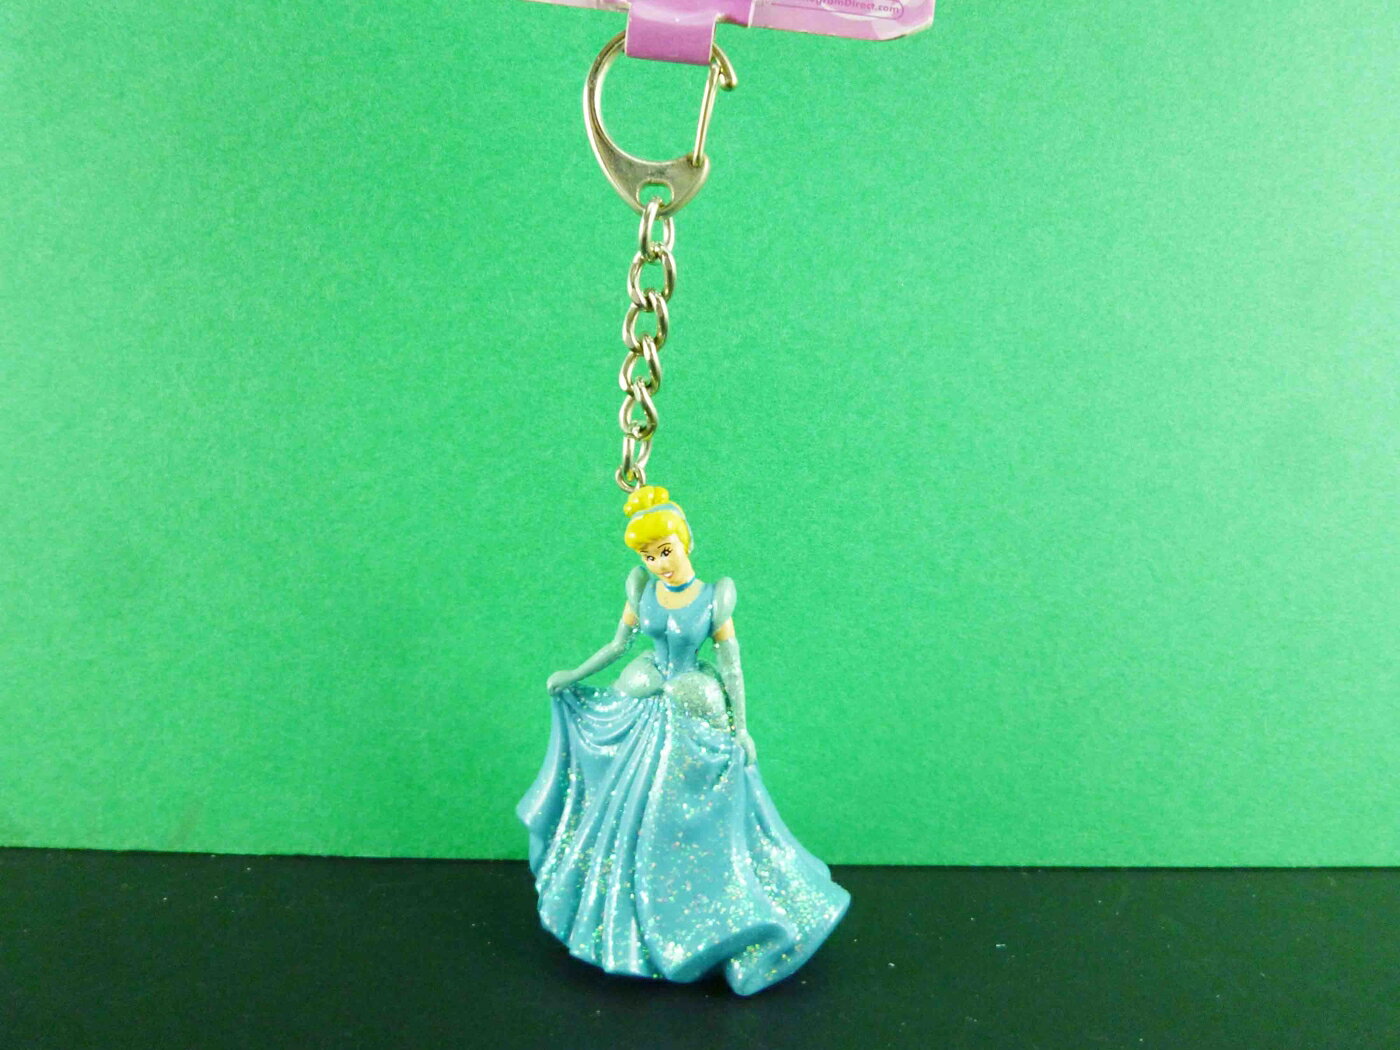 【震撼精品百貨】公主 系列Princess 立體造型鑰匙圈-灰姑娘圖案 震撼日式精品百貨